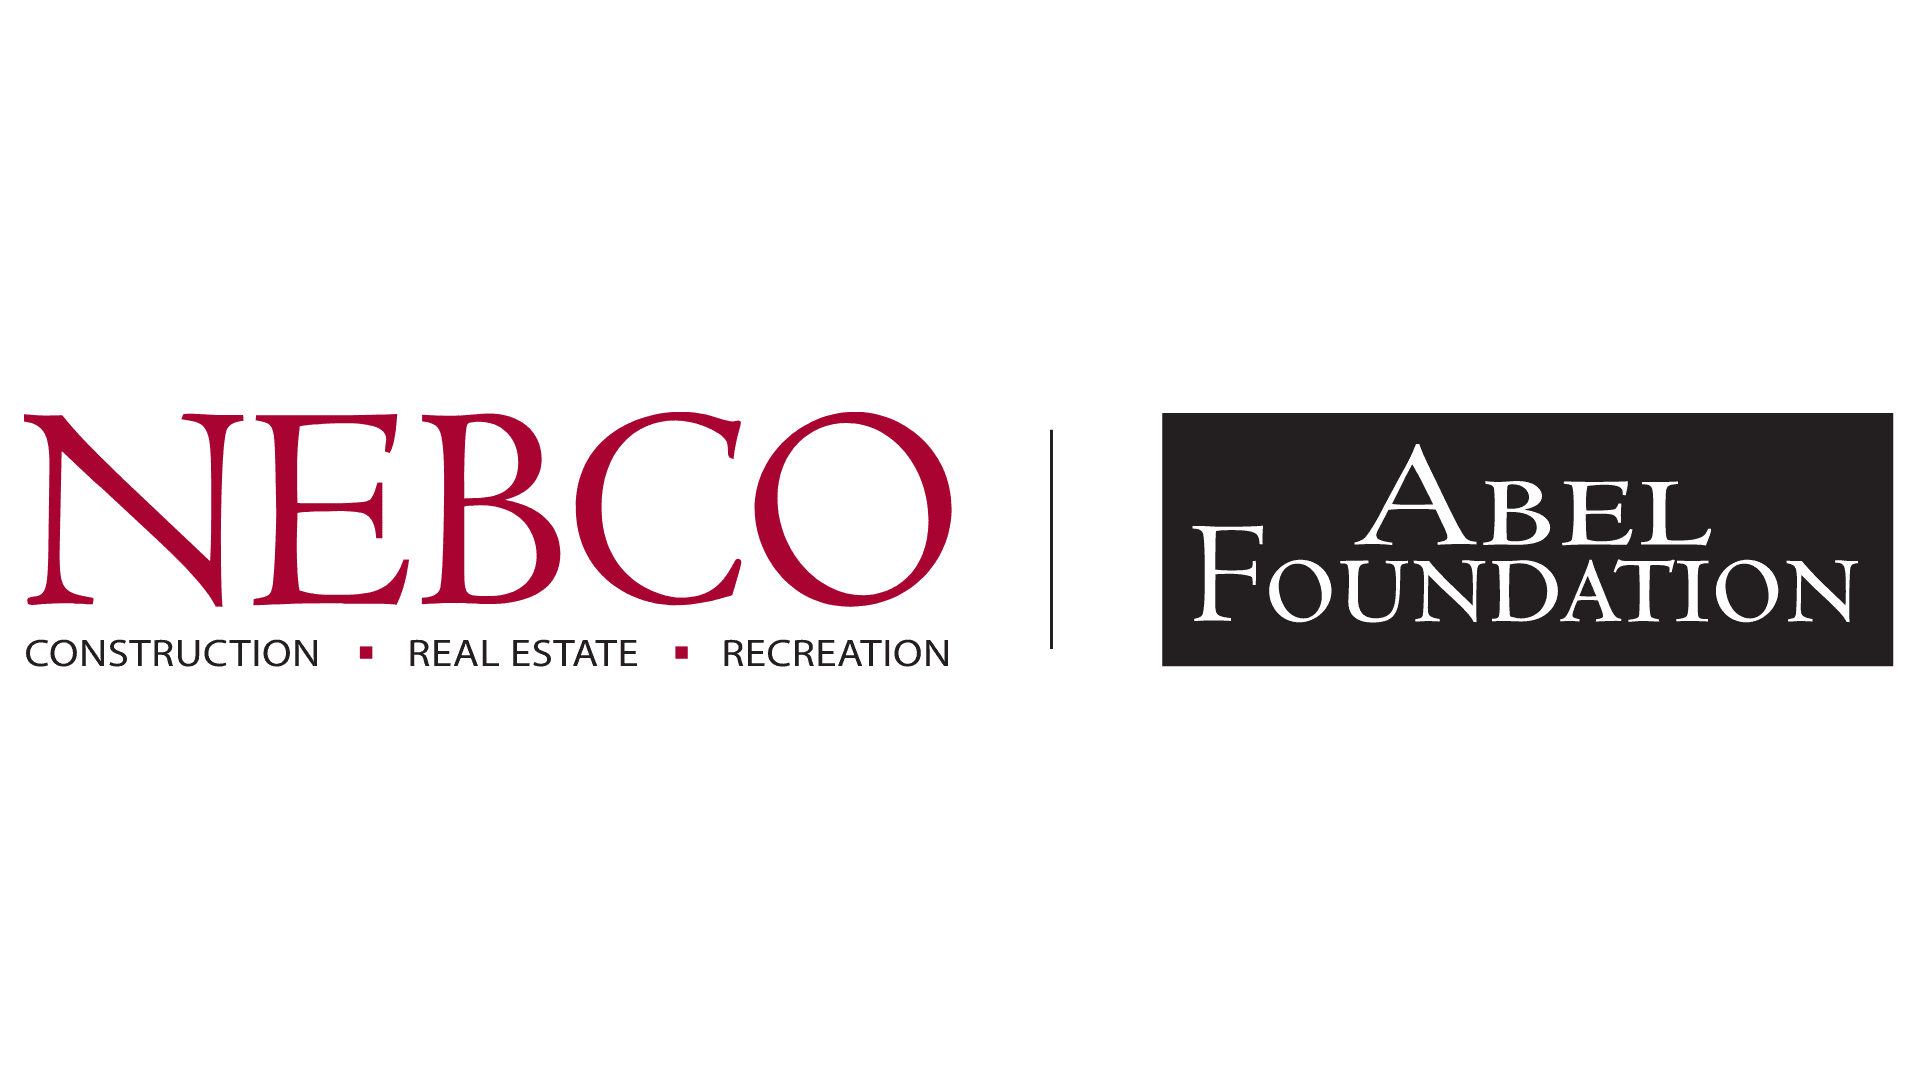 NEBCO/Abel Foundation